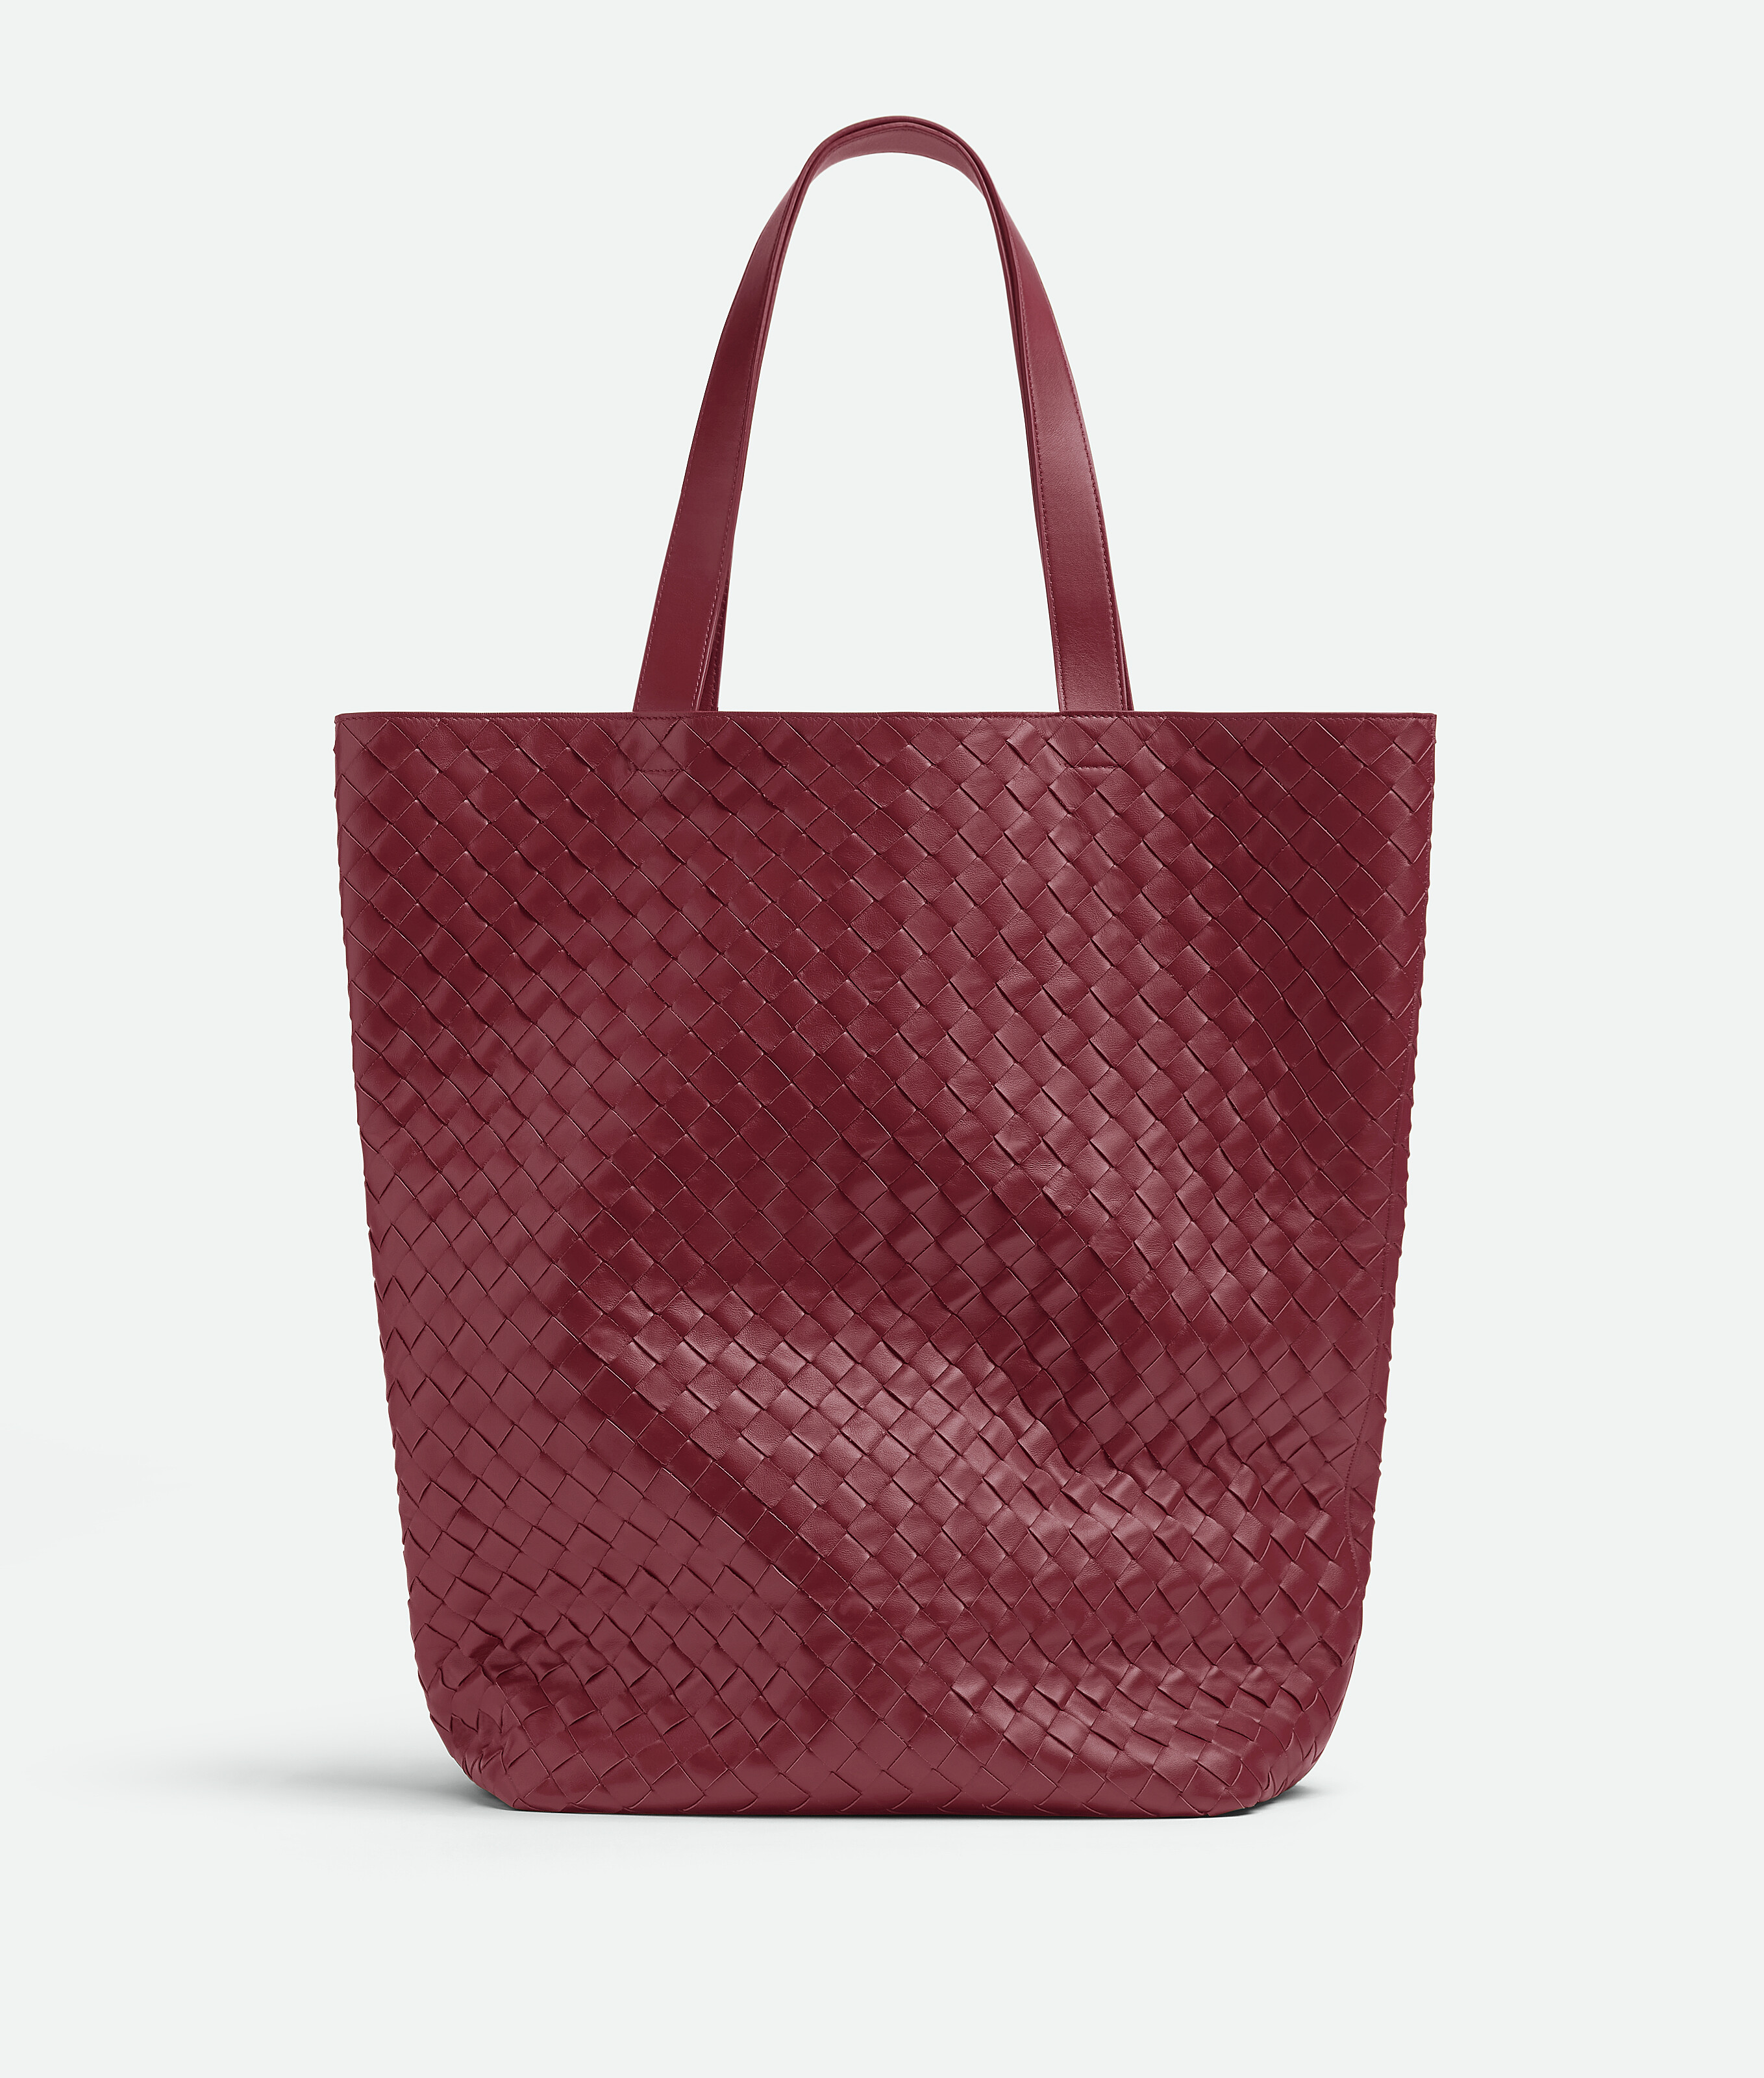 Bottega Veneta® Men's Large Intrecciato Tote Bag in Bordeaux. Shop online  now.